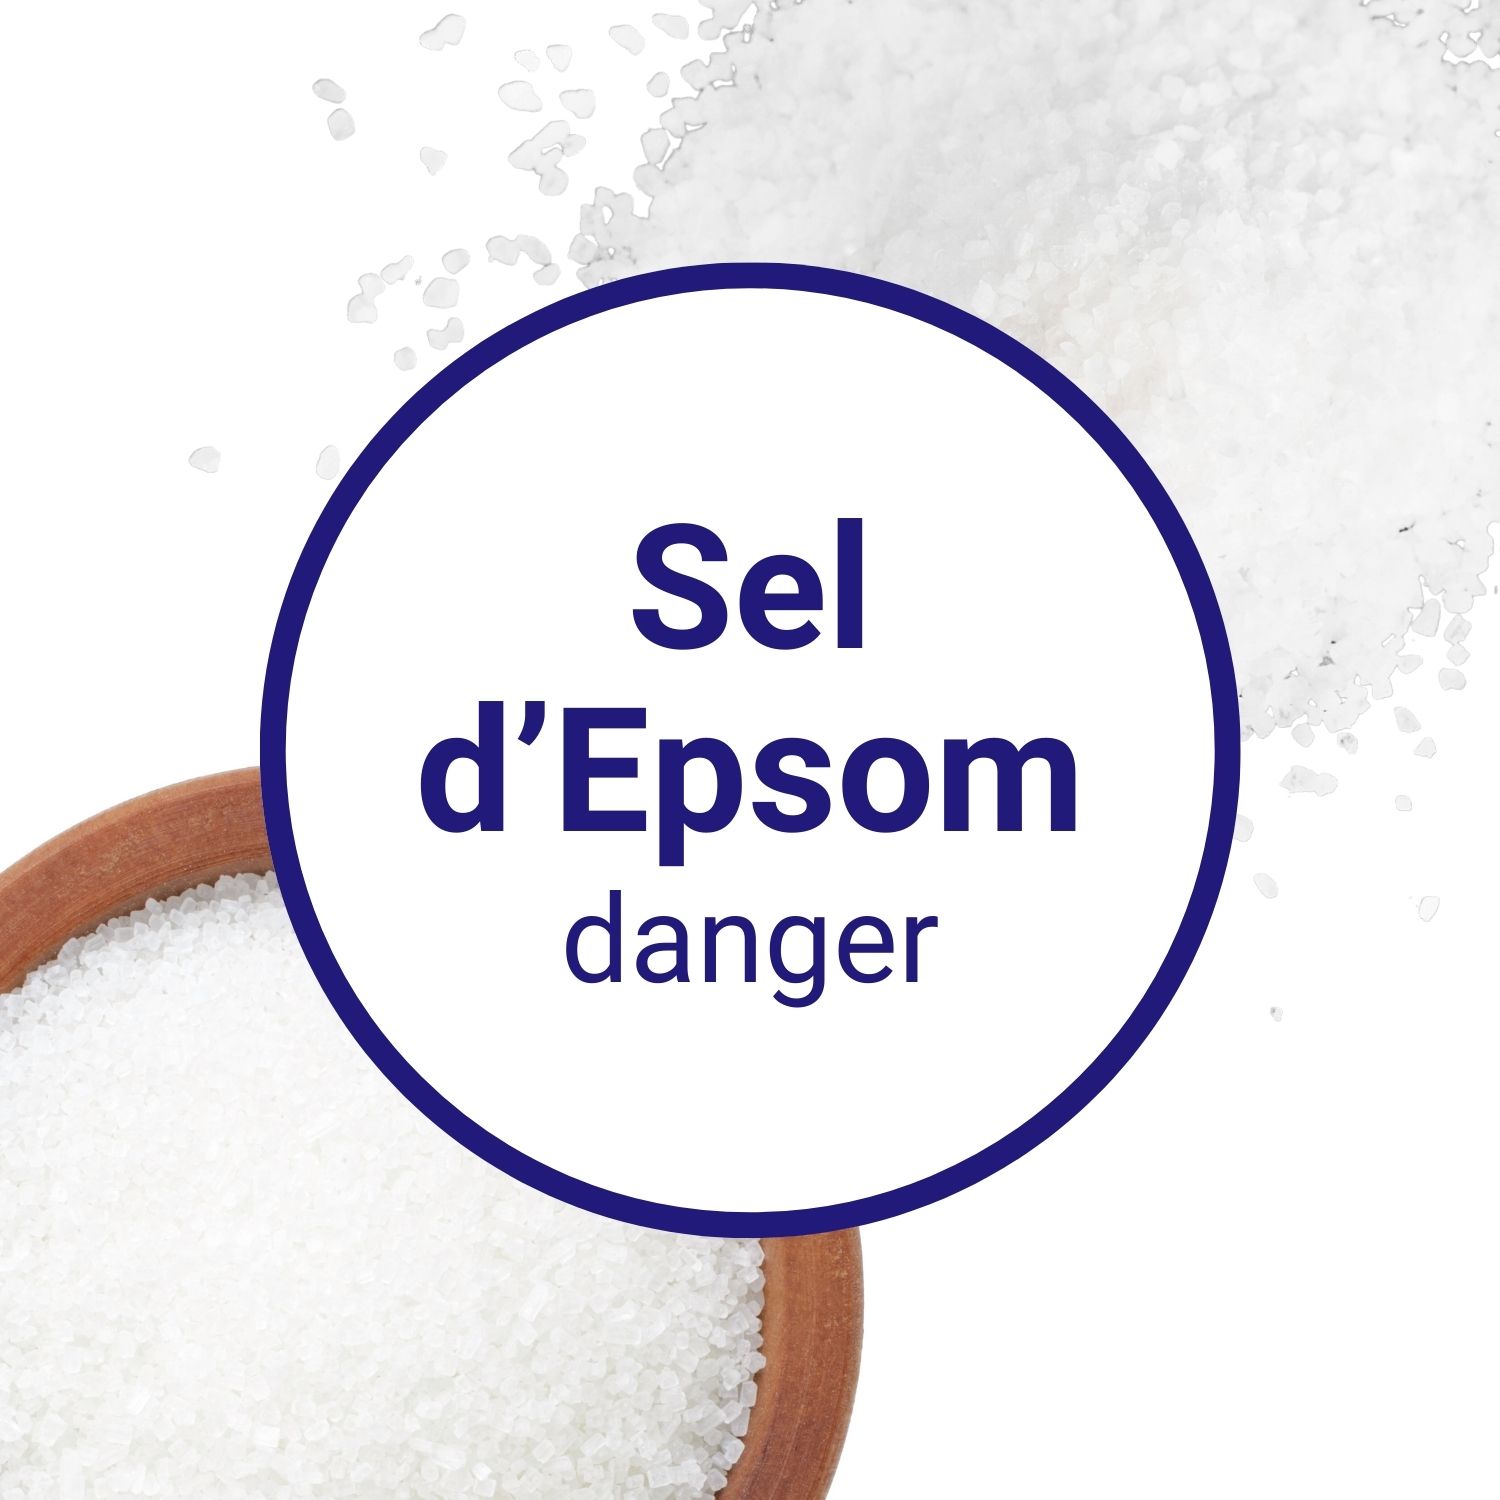 Peut-on utiliser le sel d'Epsom sans danger ?